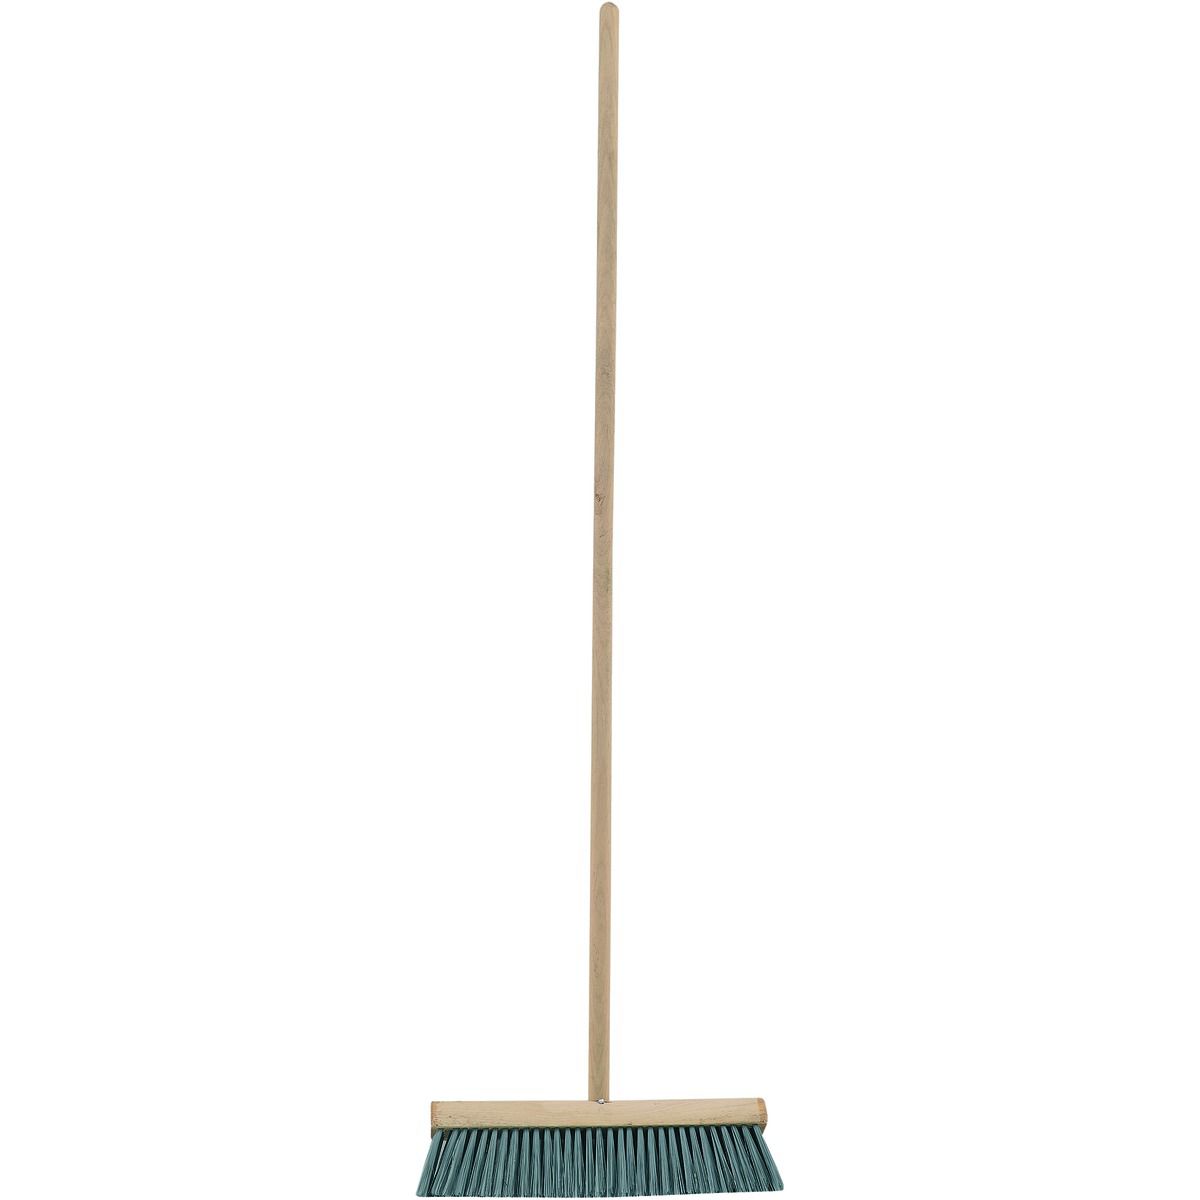 Image of General Purpose Garden Broom